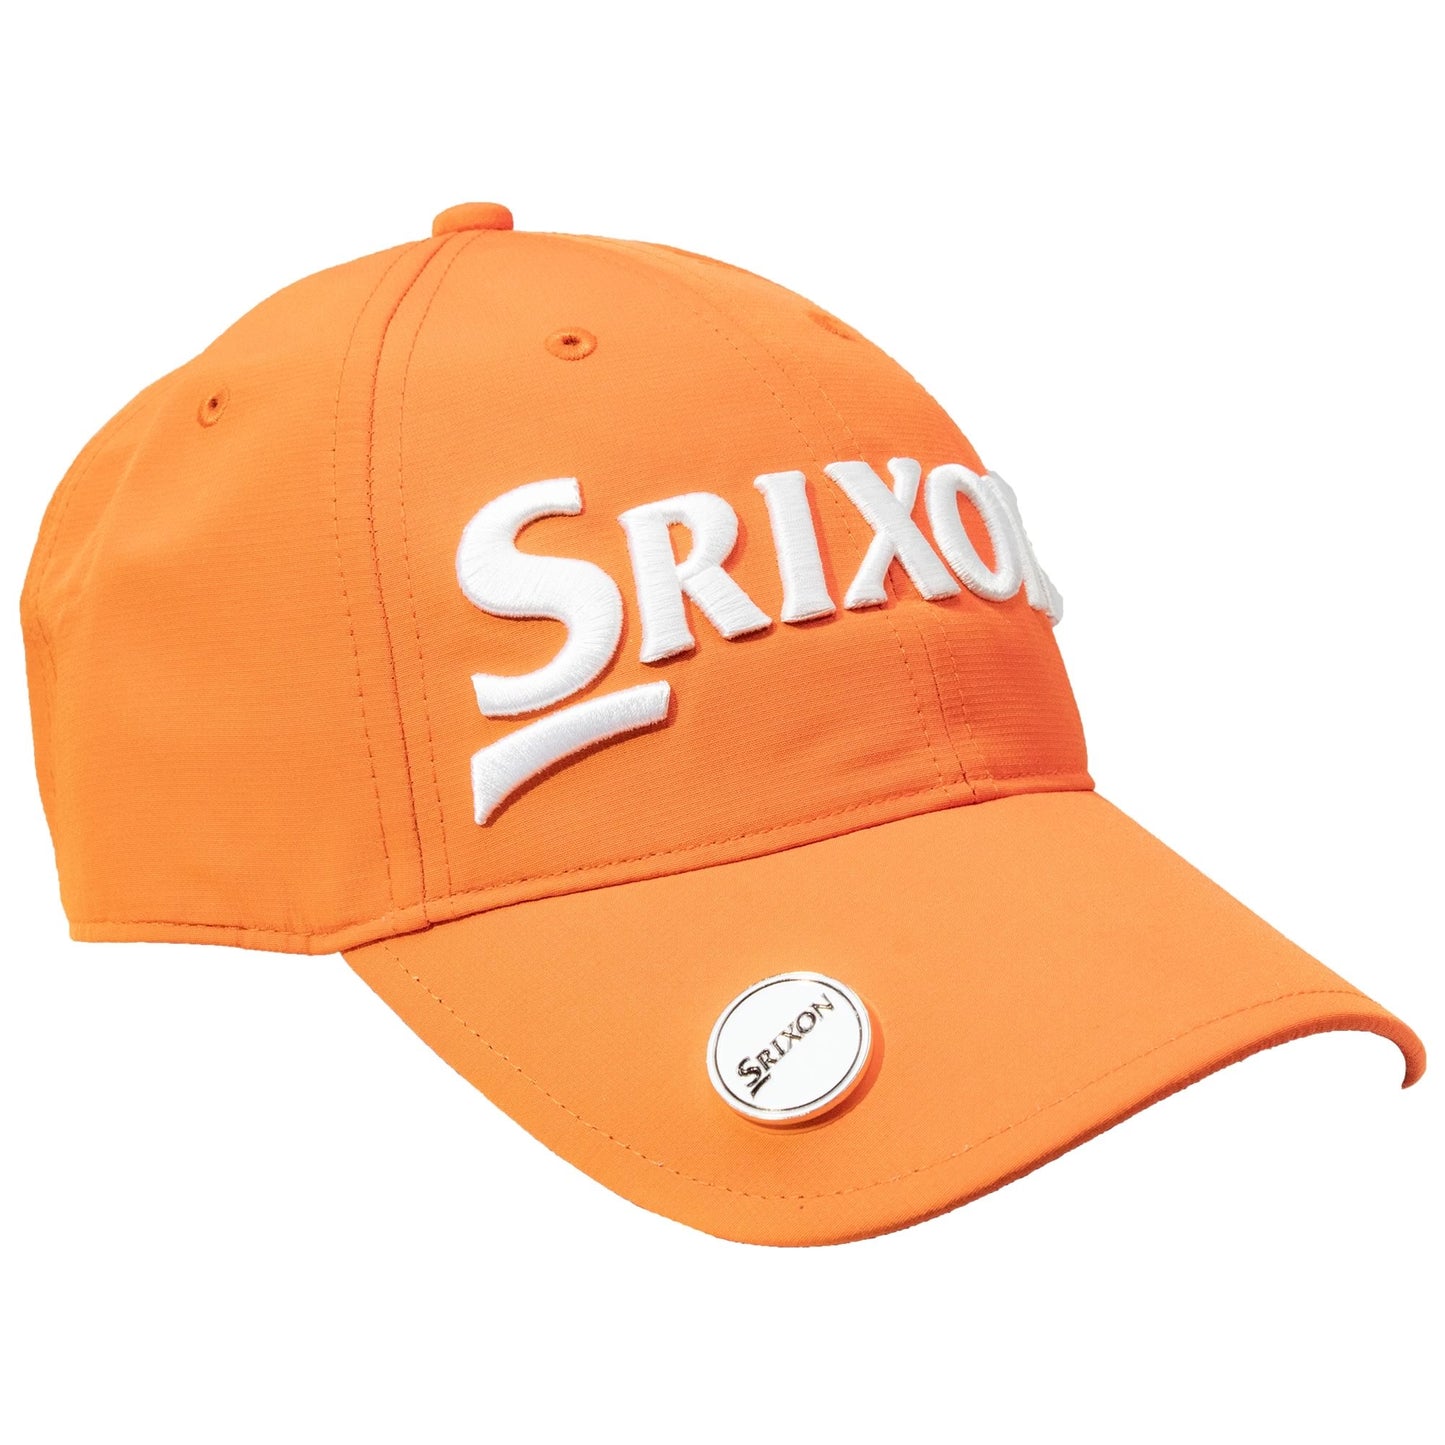 Srixon Ball Marker Cap Orange/White